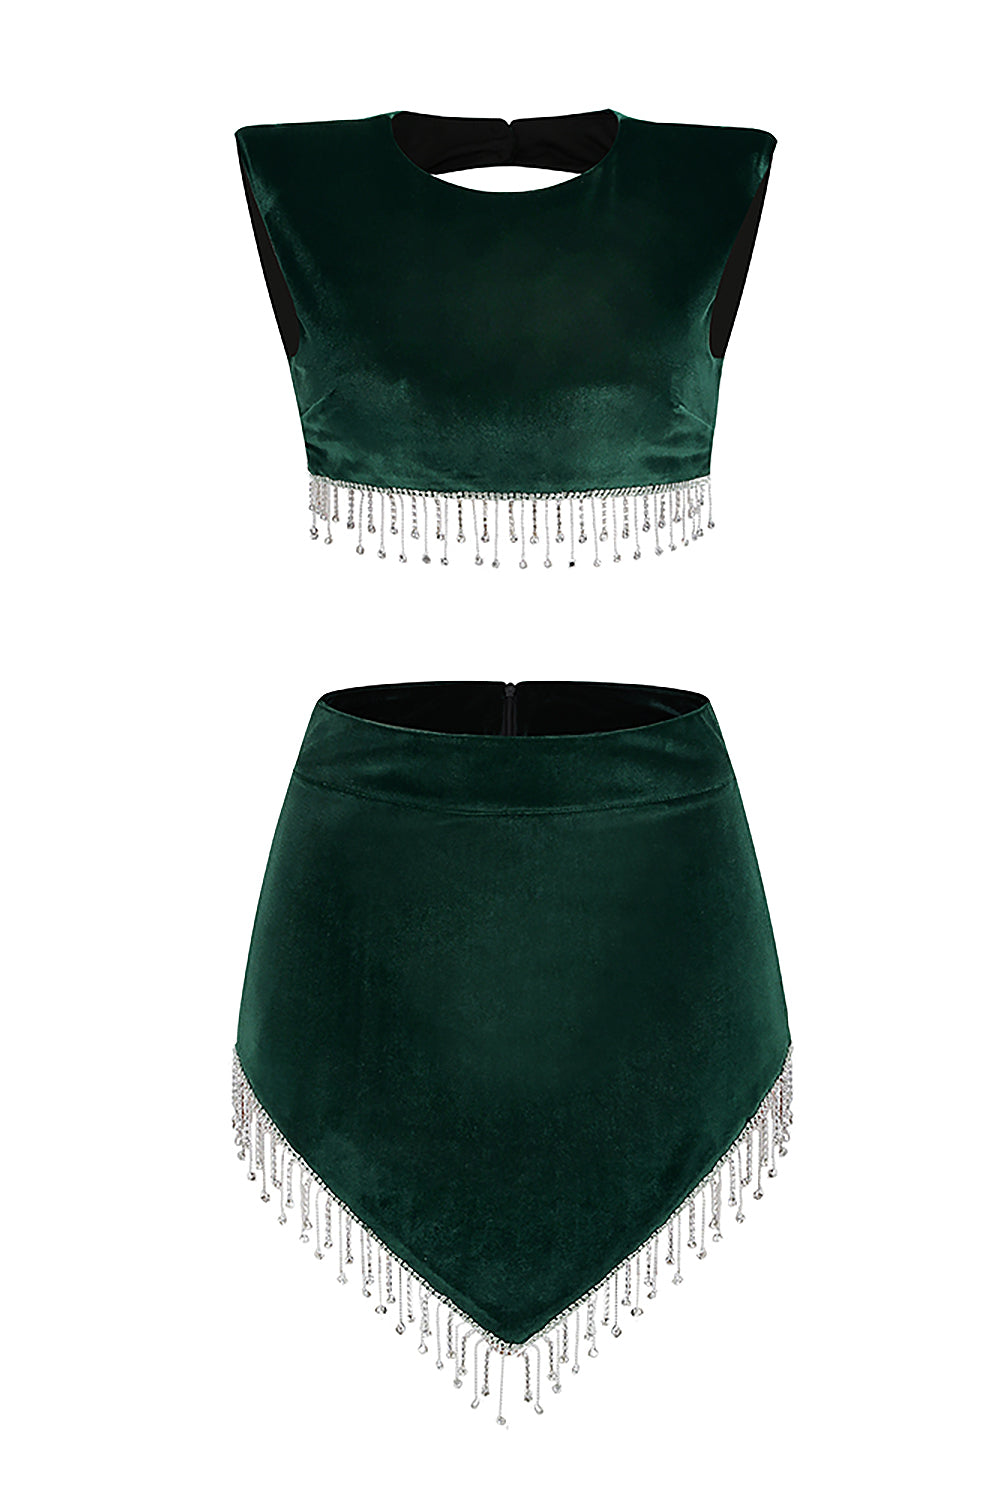 Conjunto de dos piezas de terciopelo con borlas de cristal, falda corta de cintura alta en negro, marrón y verde oscuro